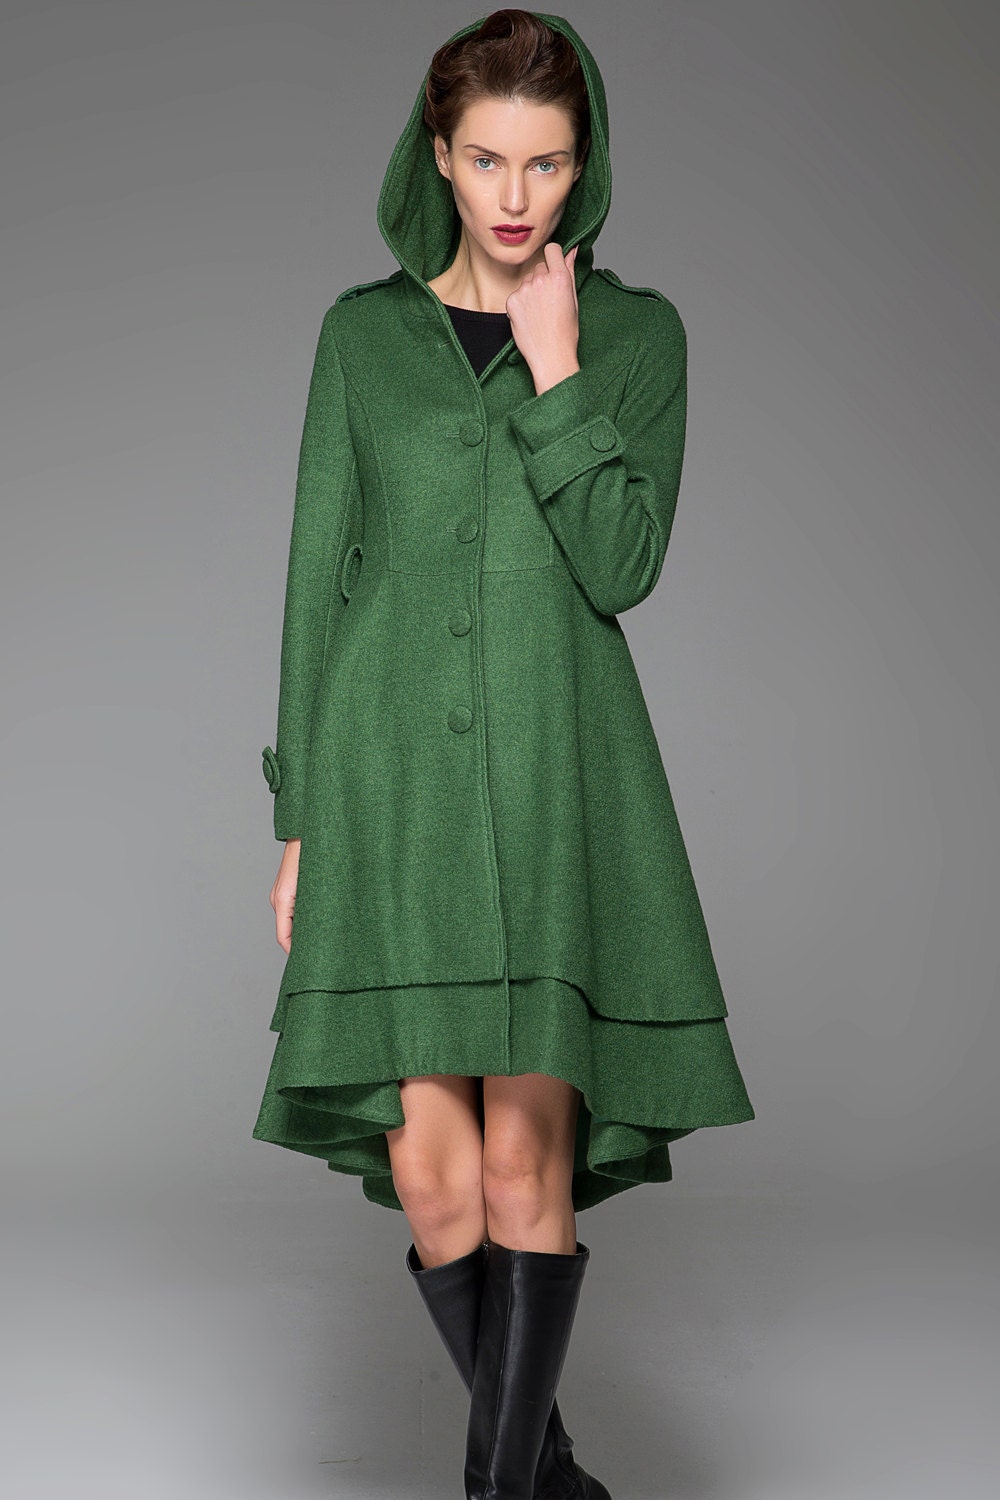 Hooded Asymmetrical wool coat Green coat winter coat women | Etsy